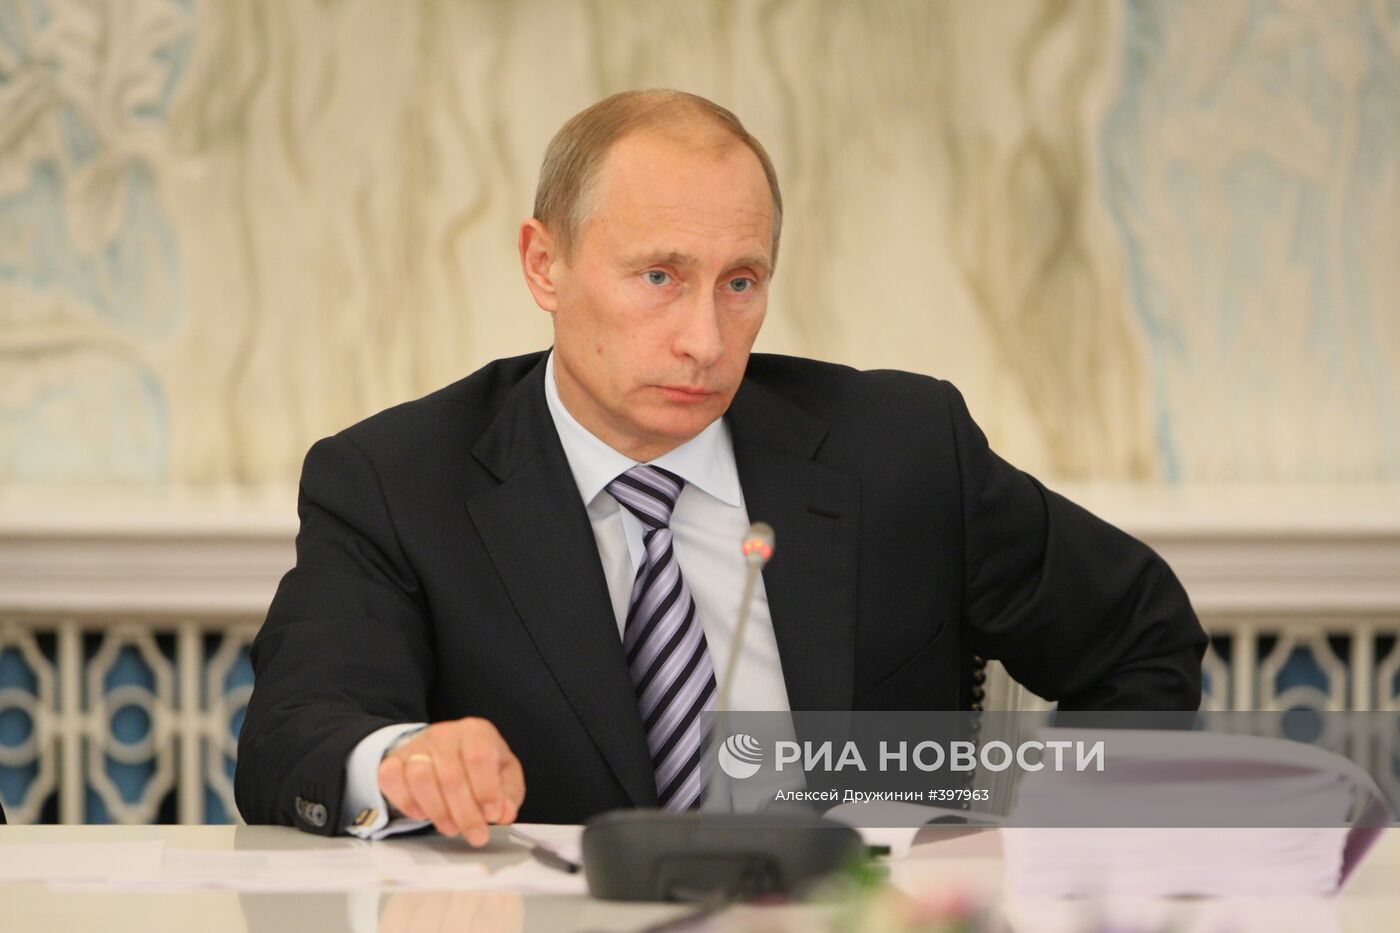 Премьер-министр РФ Владимир Путин в Минске